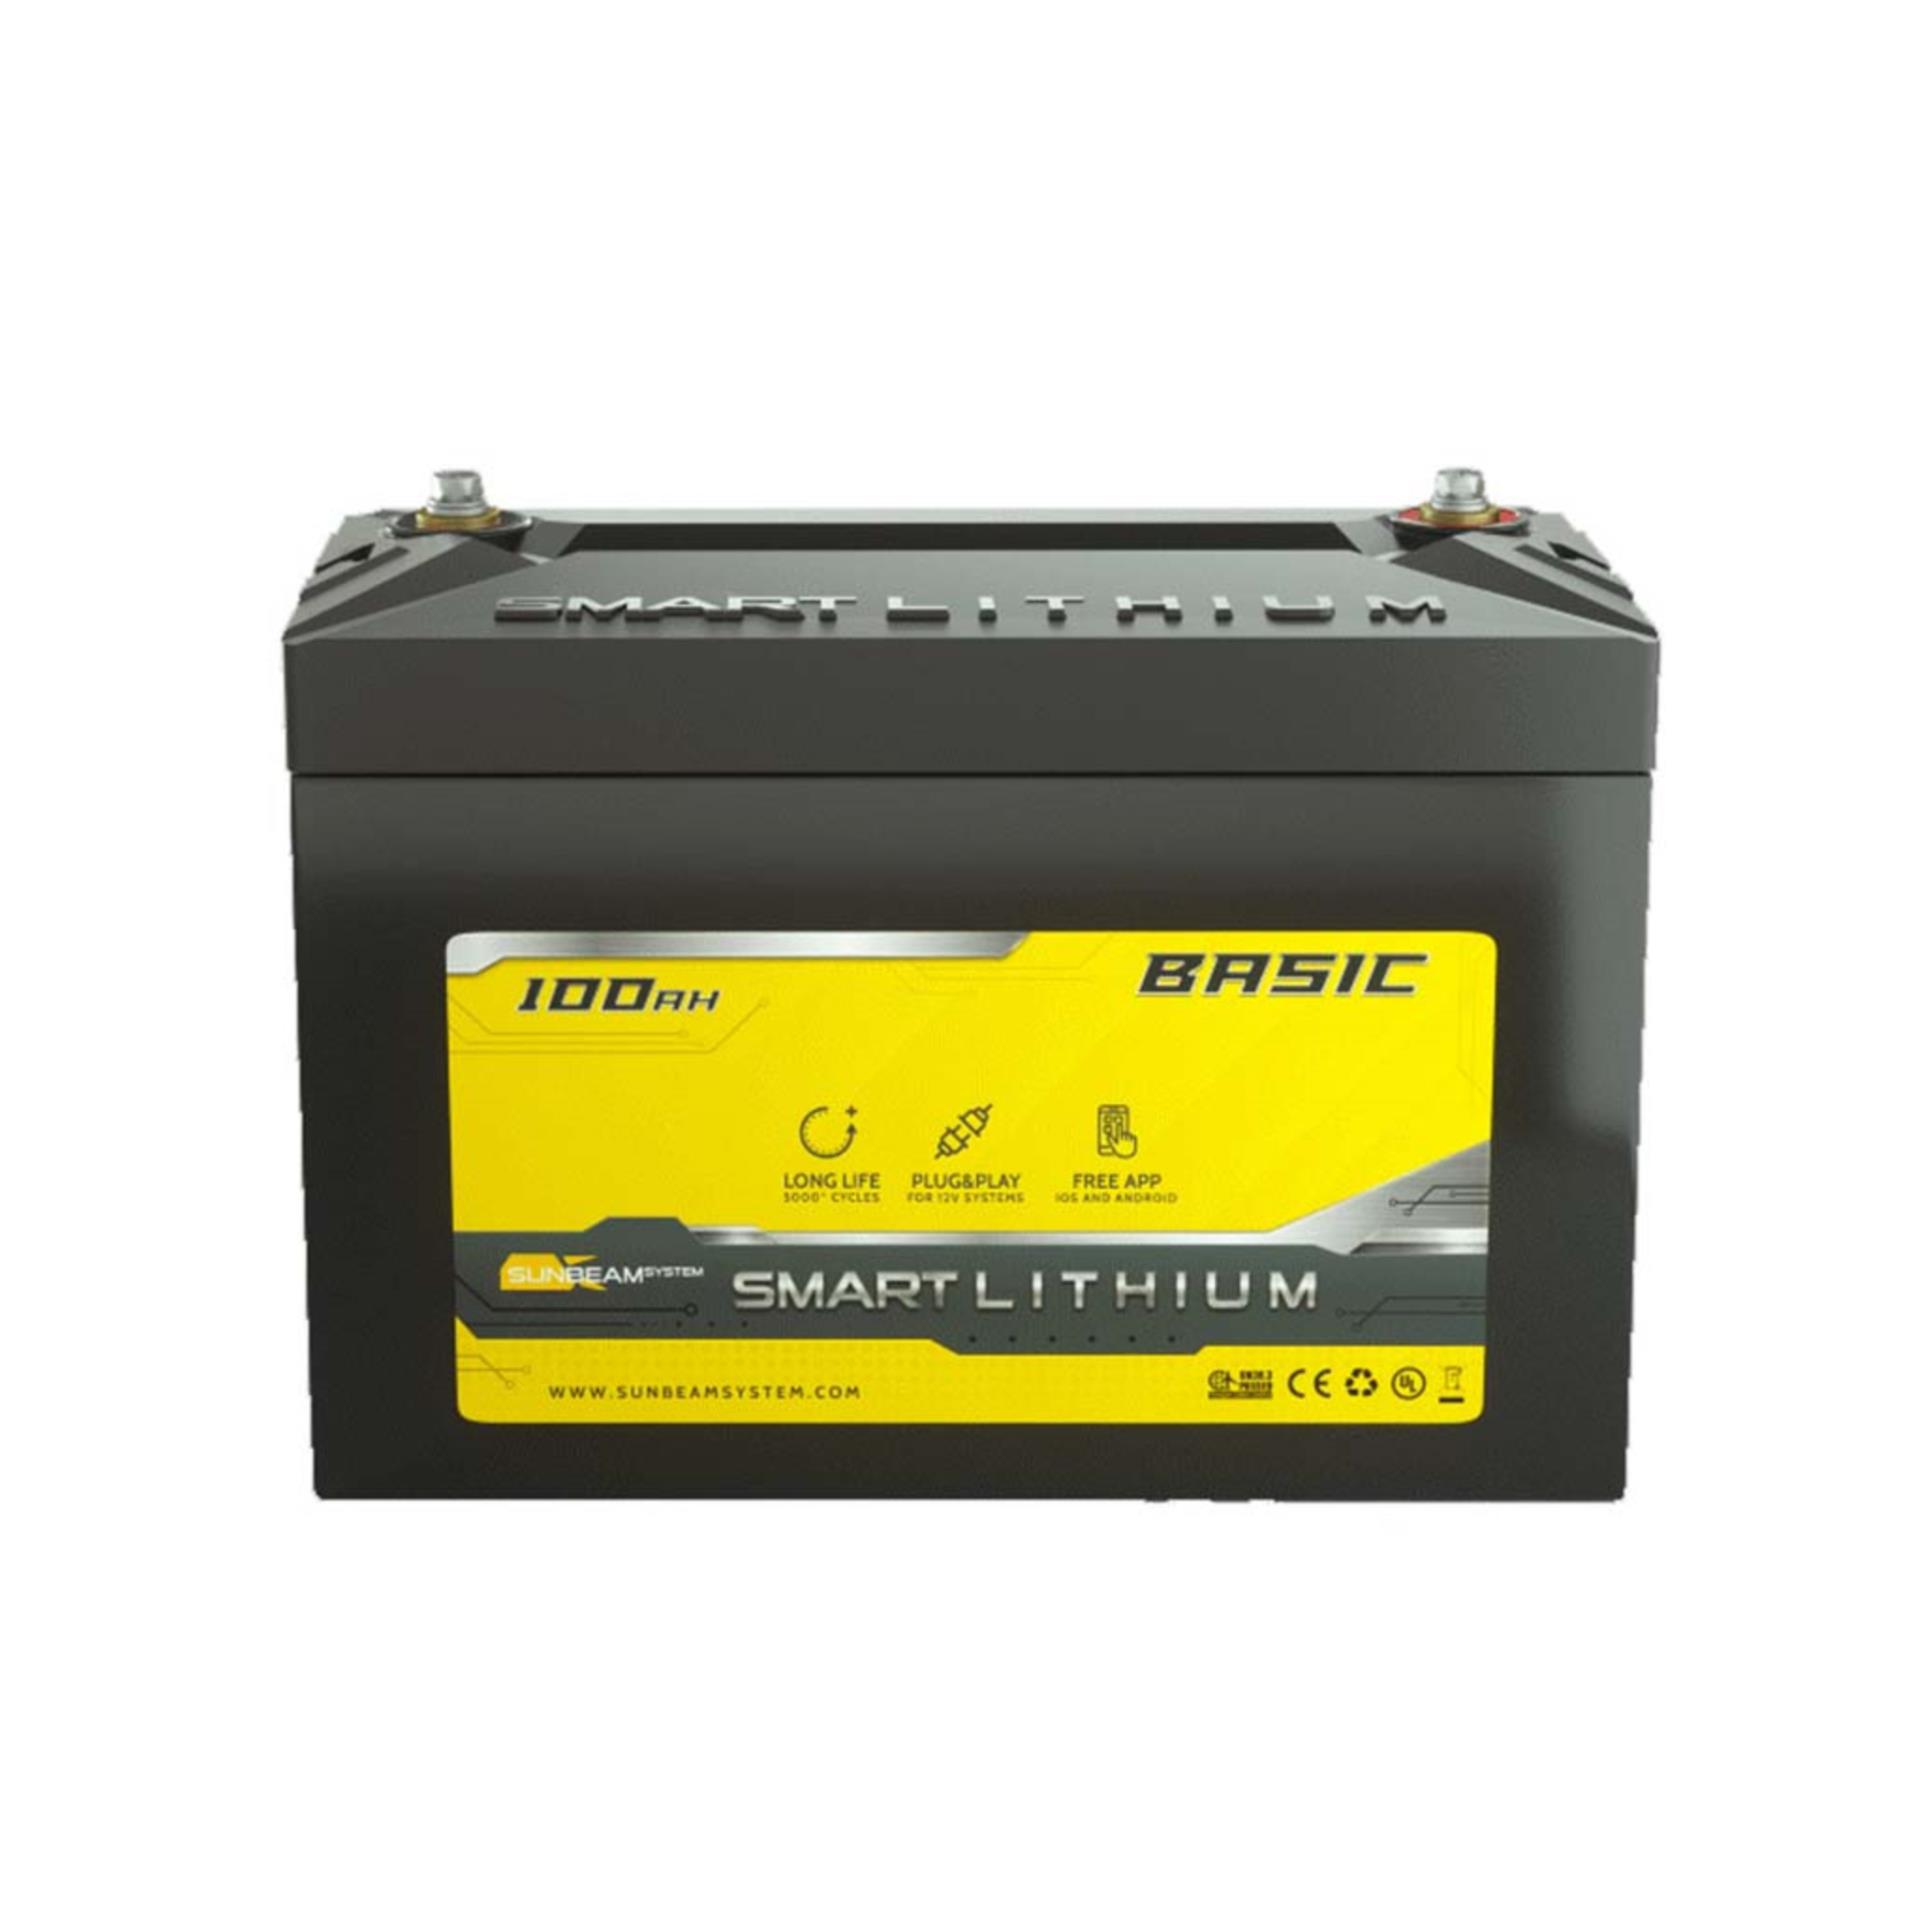 Smart Lithium Basic Batterie 100AH 2Stück